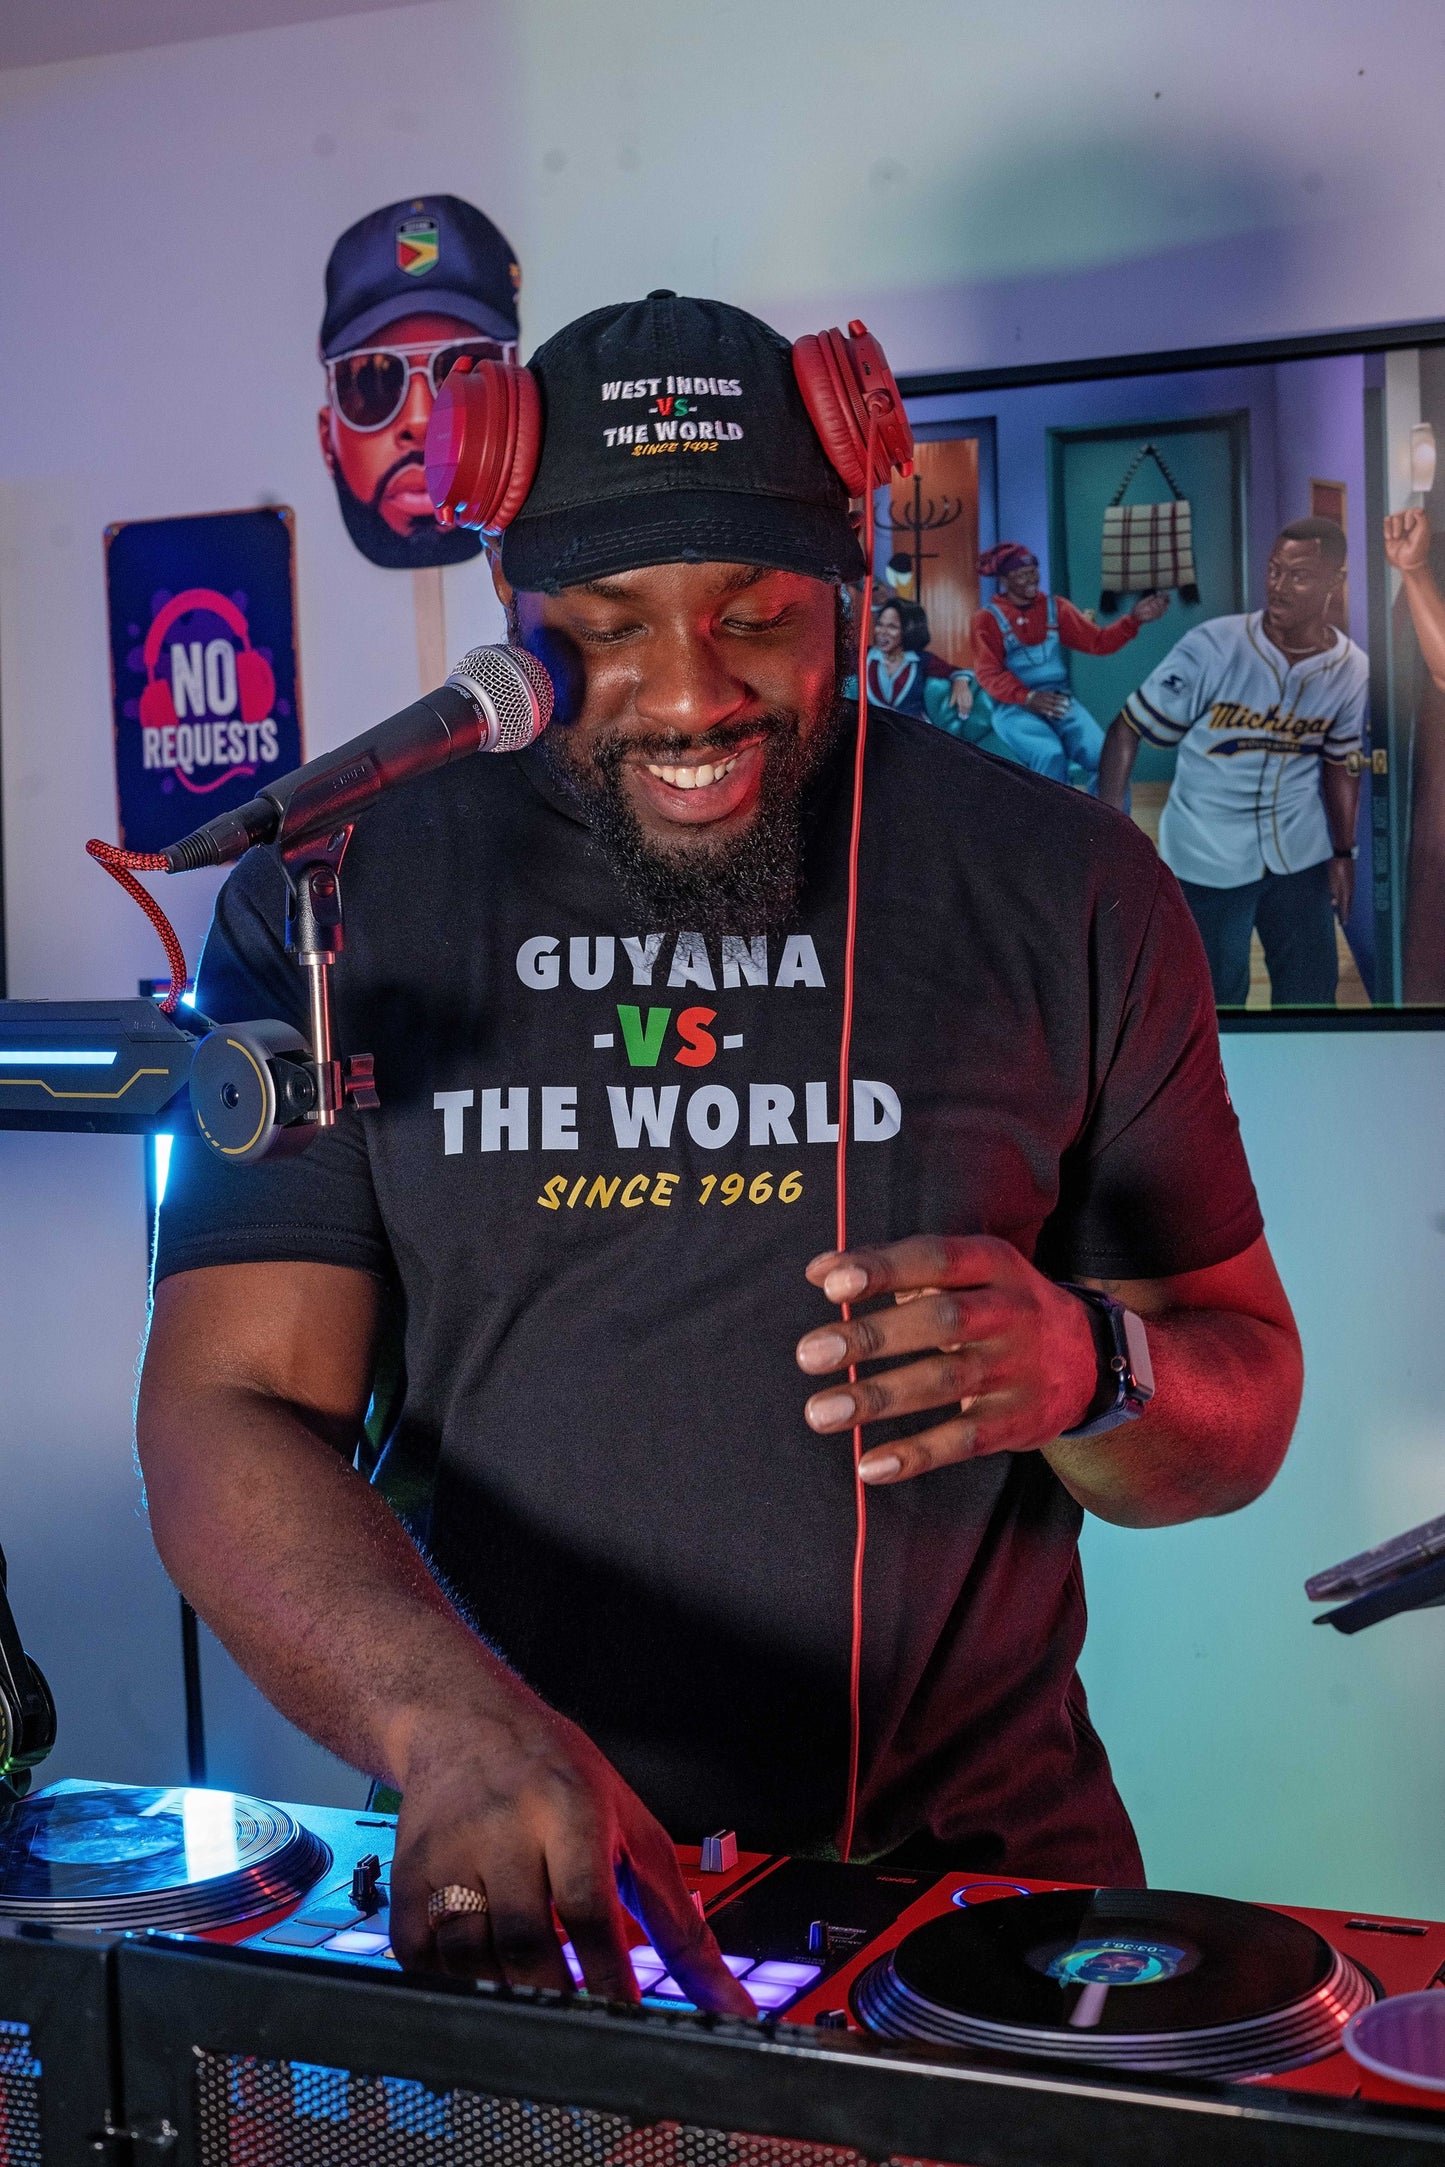 Guyana -vs- The World T-Shirt